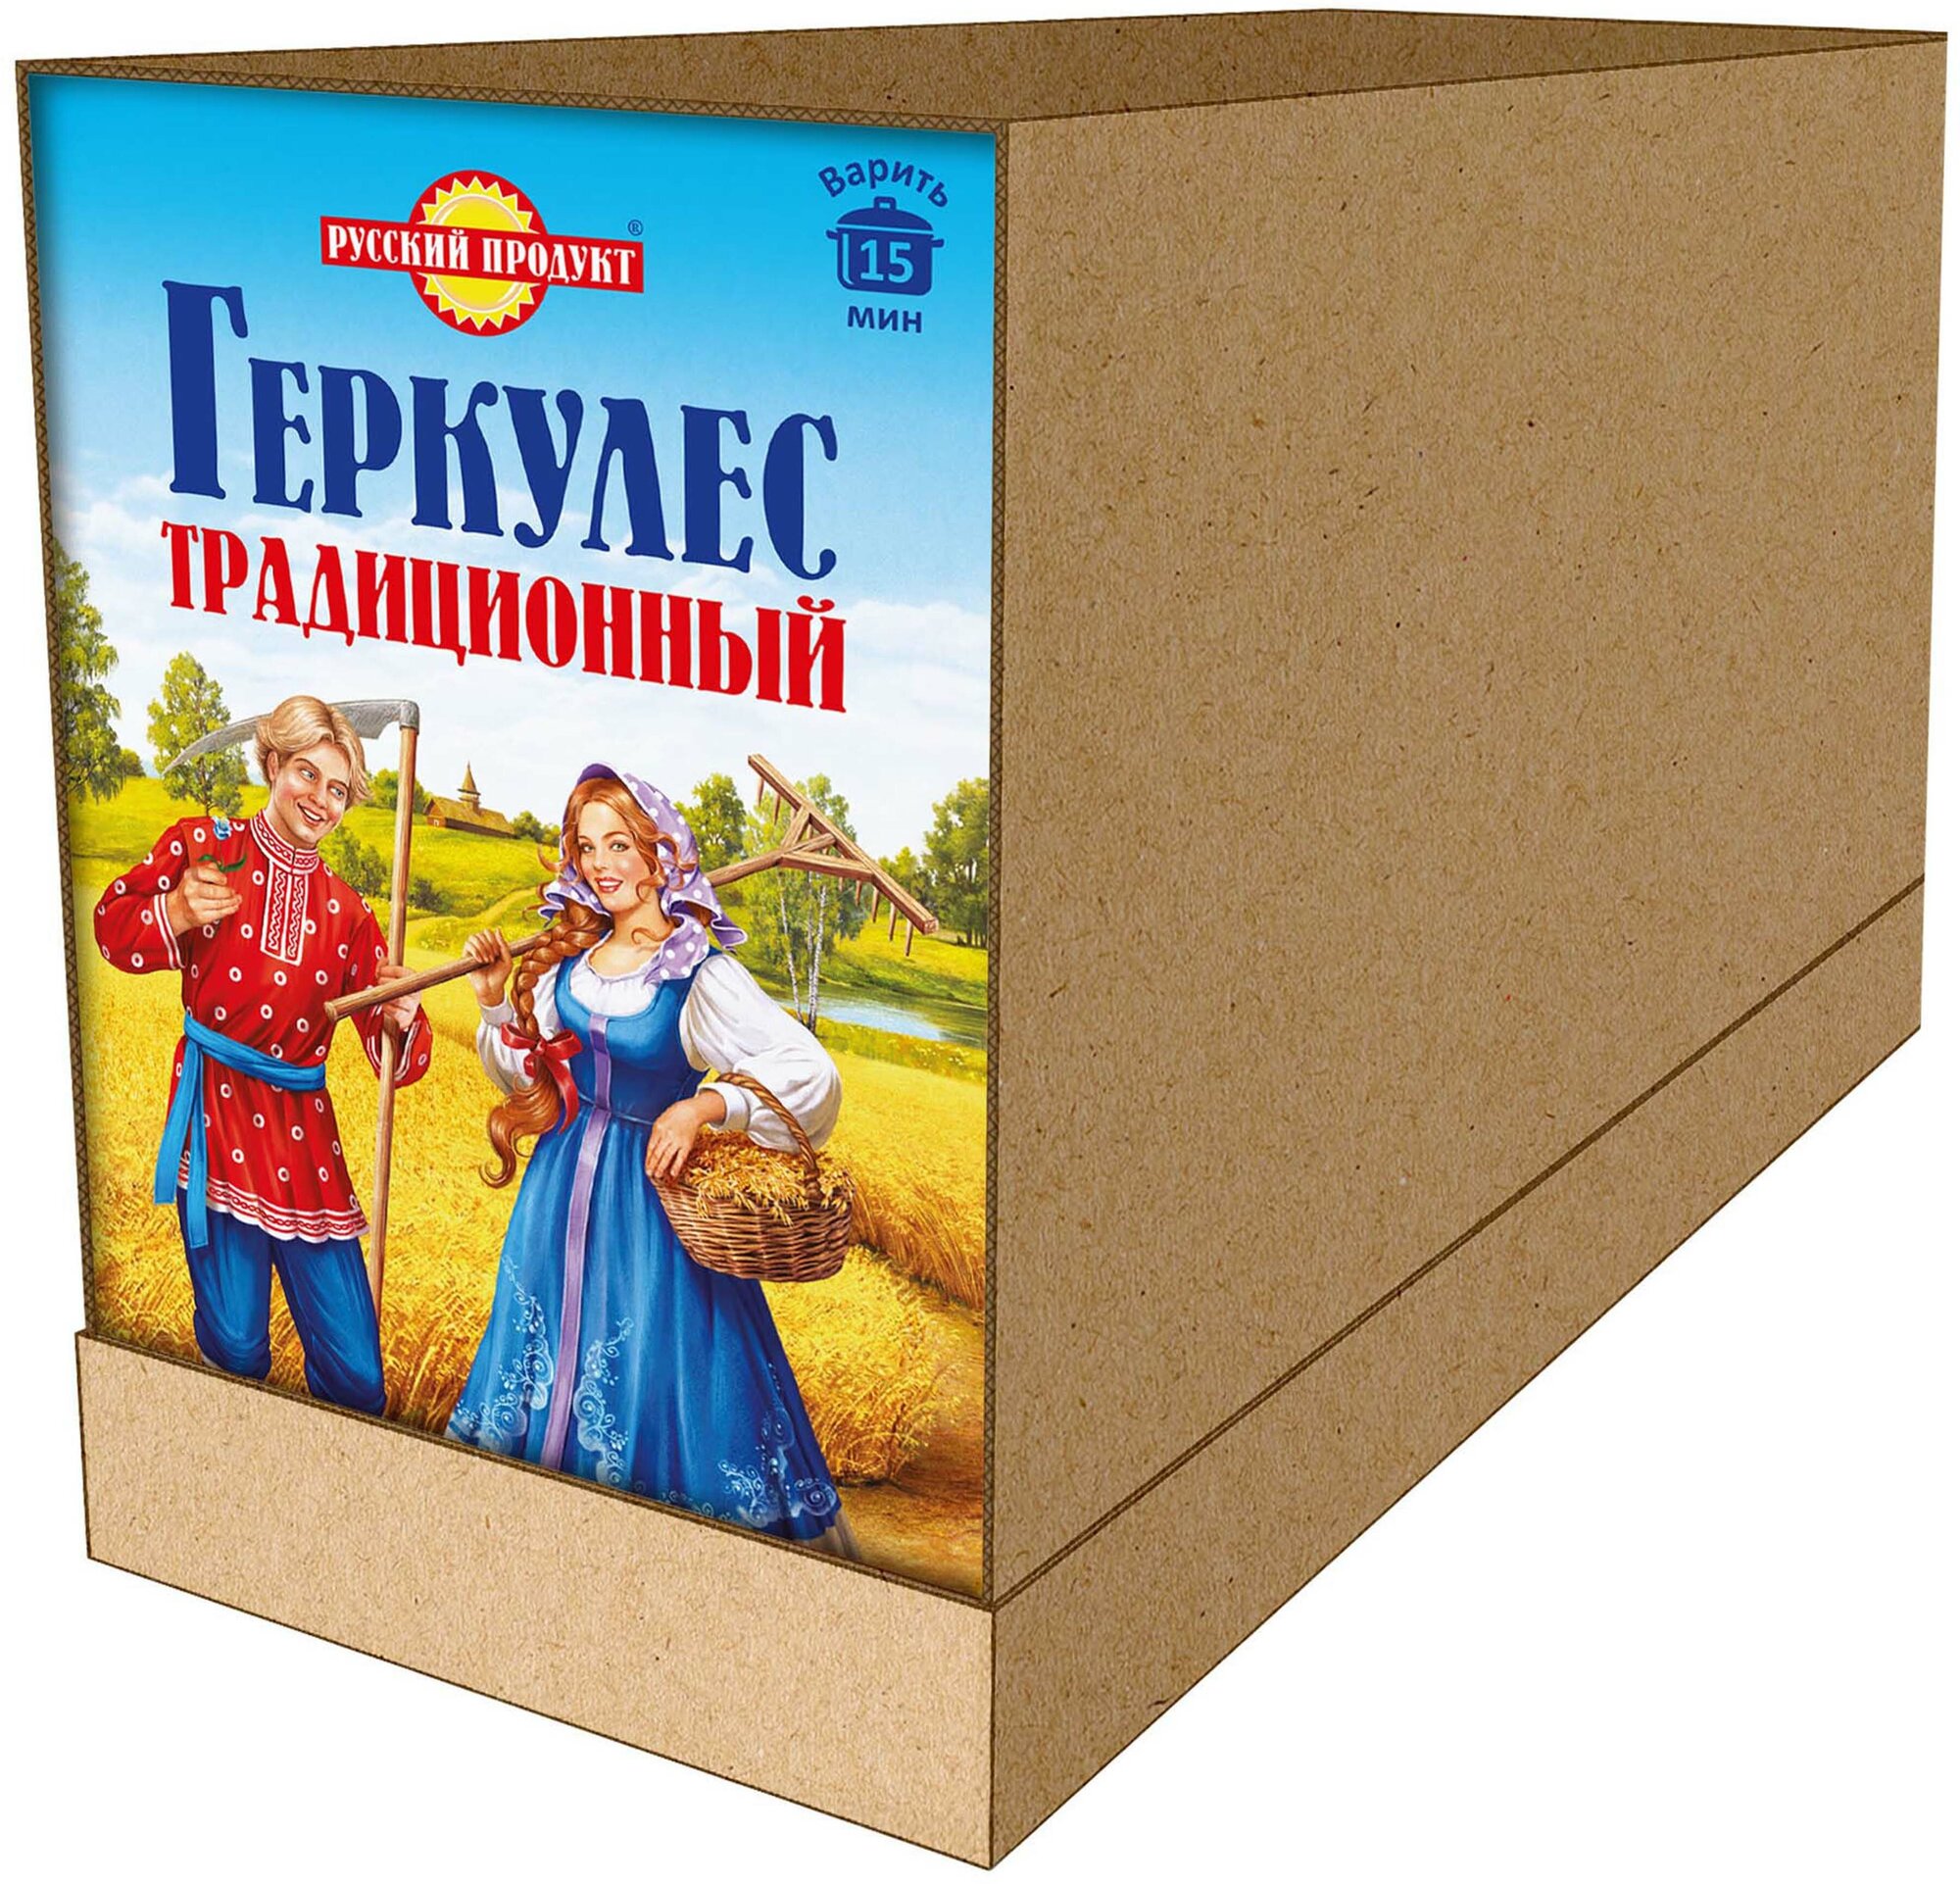 Овсяные хлопья Геркулес Традиционный 500 гр x 6 штук в коробке, Русский Продукт